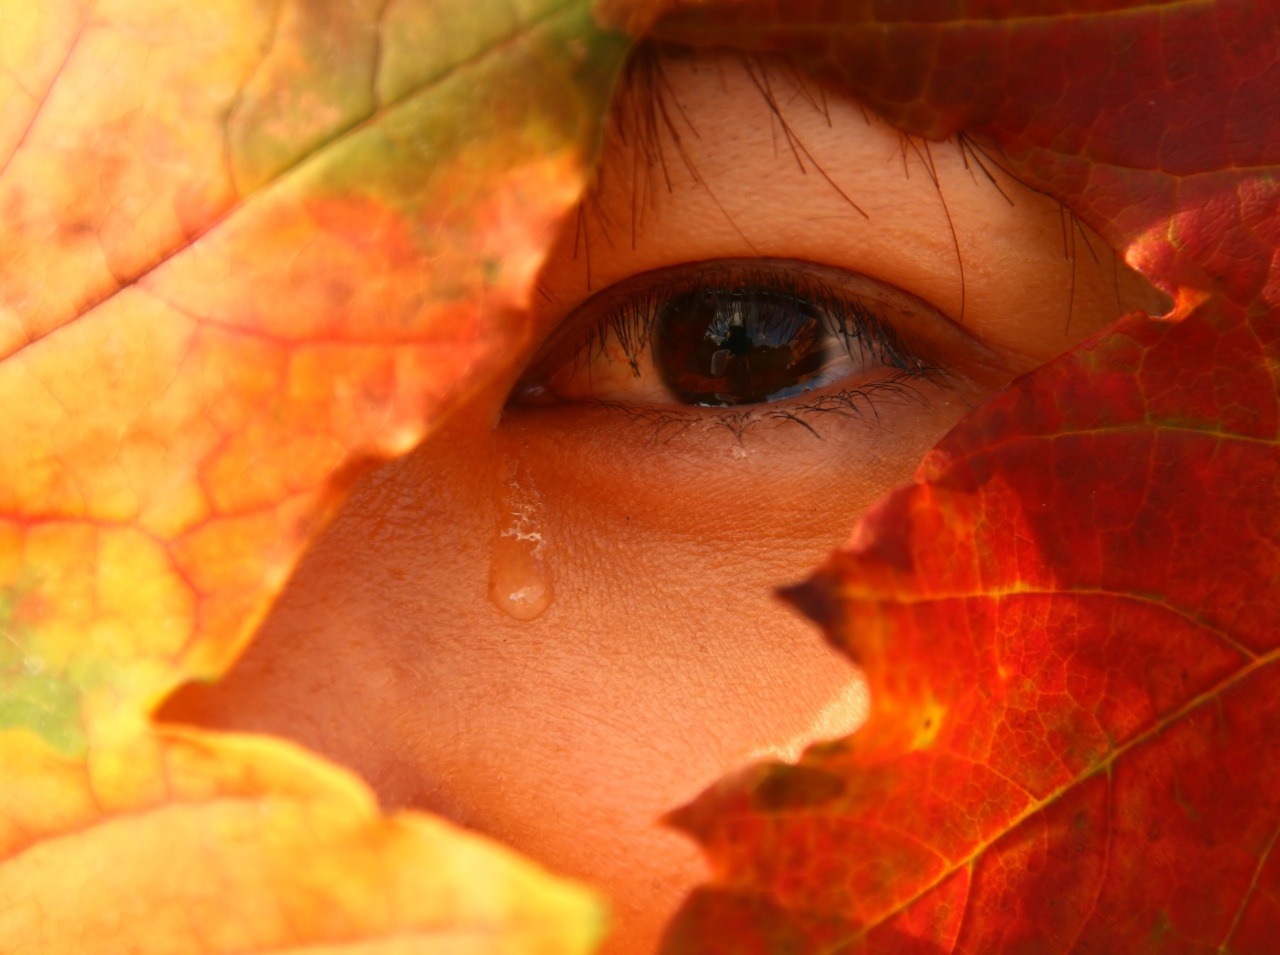 Jesenná depresia postihuje ľudí teraz viac ako obvykle, keďže je škaredé počasie.